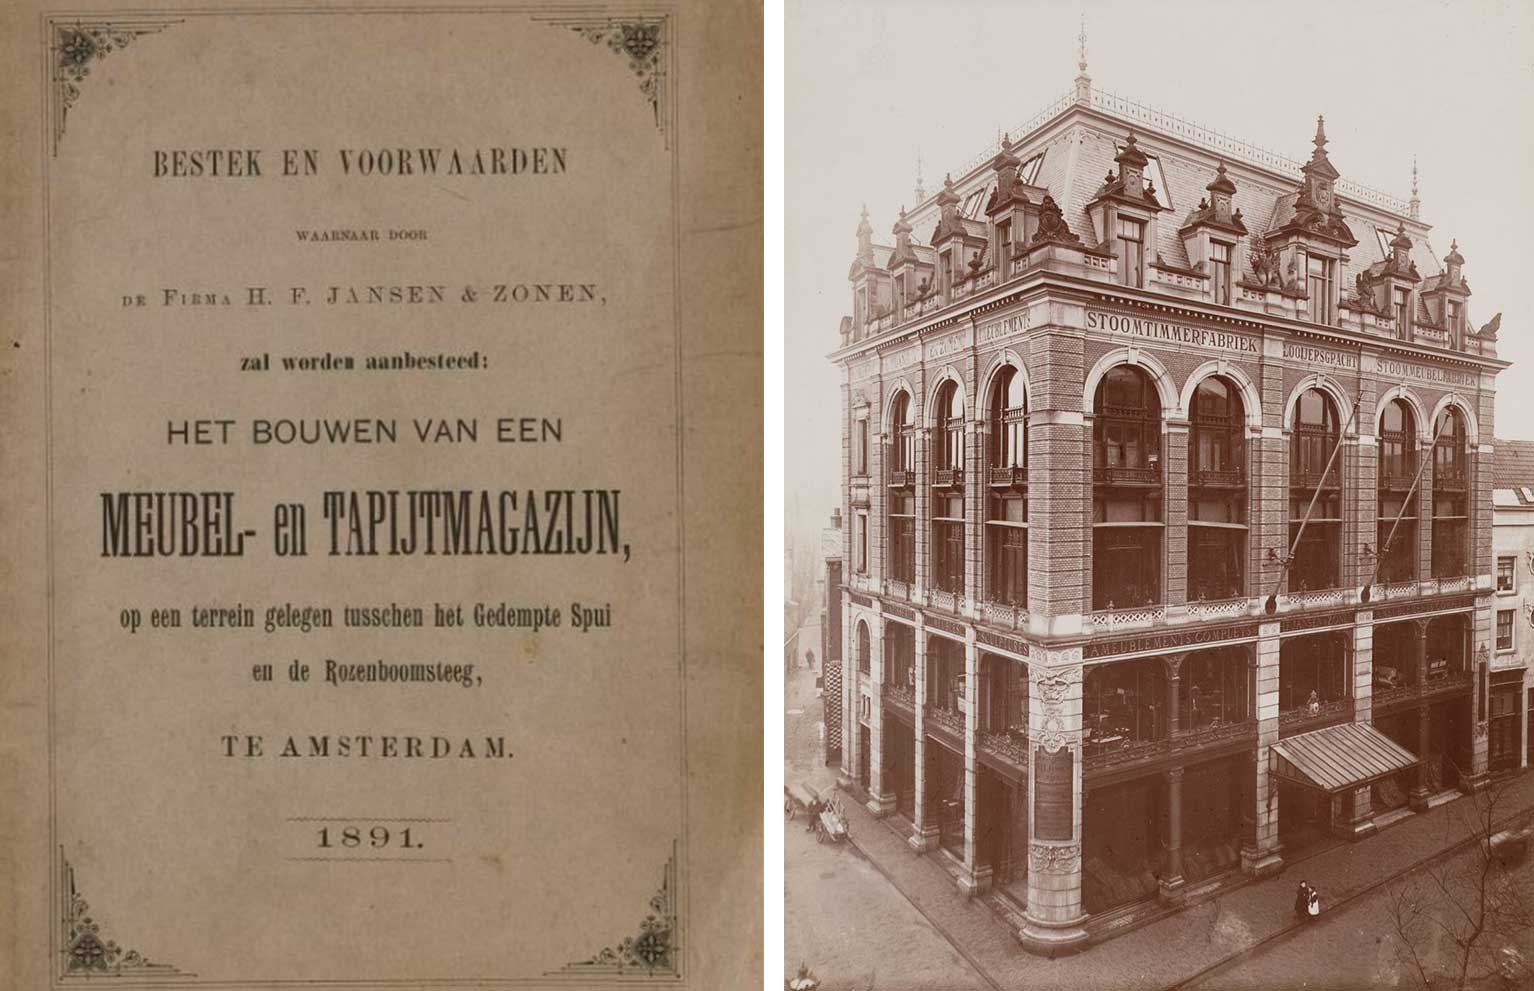 Bestek uit 1891 voor Spui 10A, Amsterdam, en foto van Max Büttinghausen uit 1900